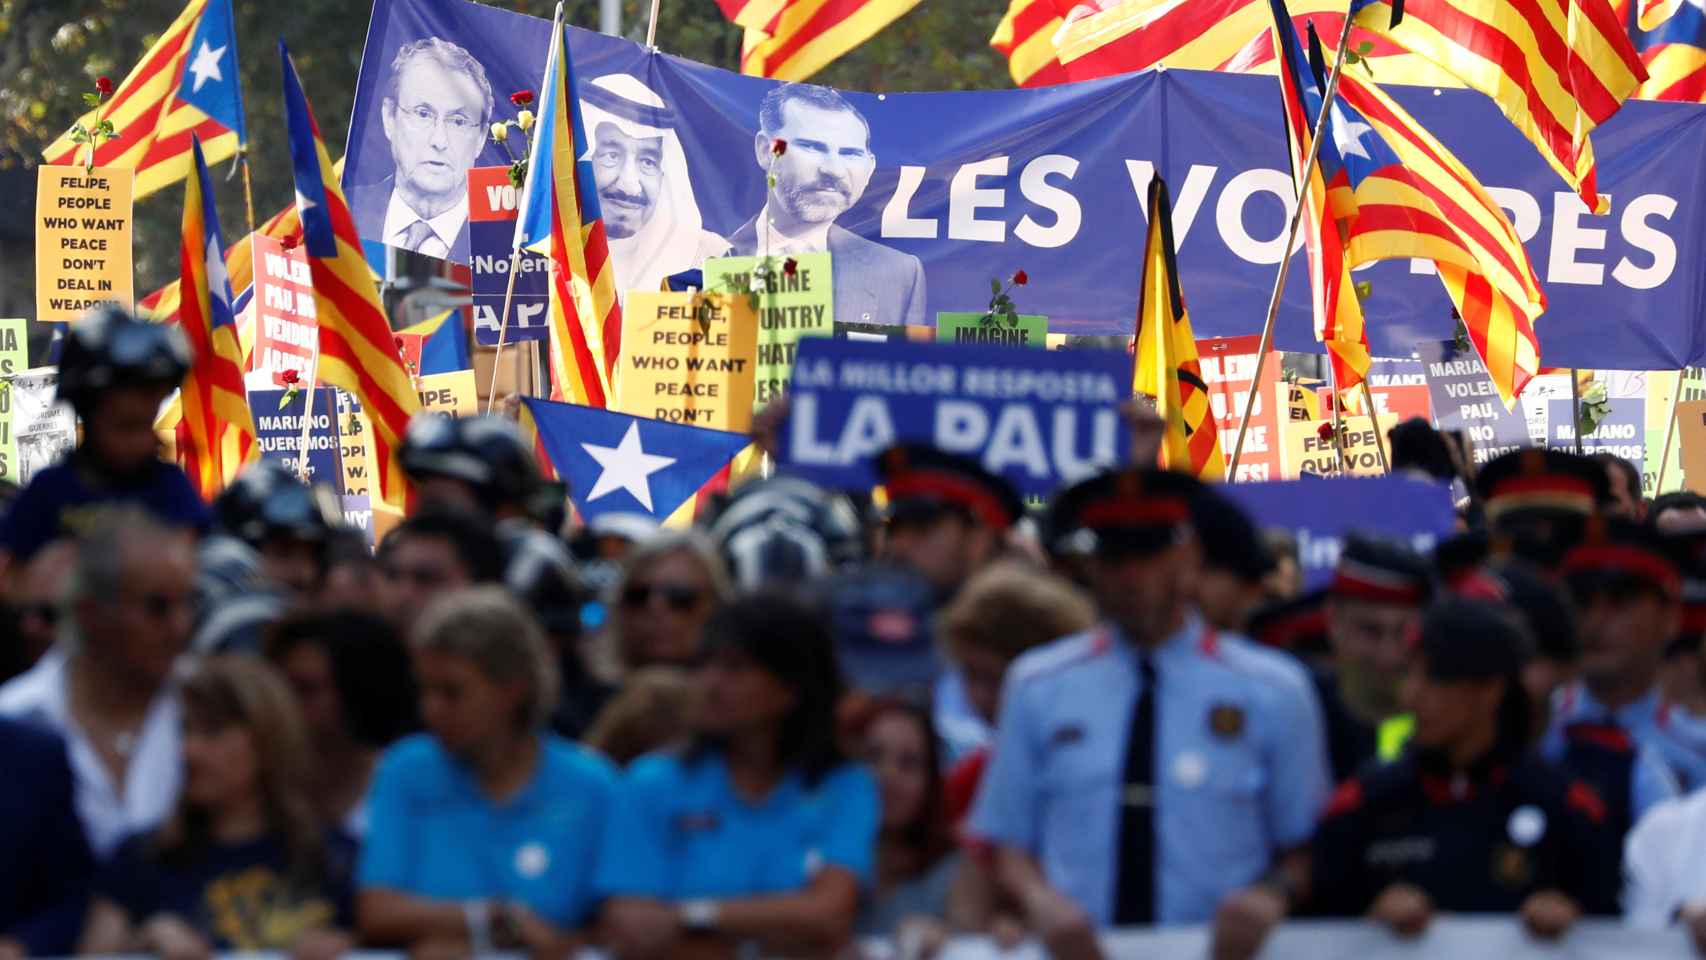 Imagen de la manifestación en contra de los atentados de Cataluña.